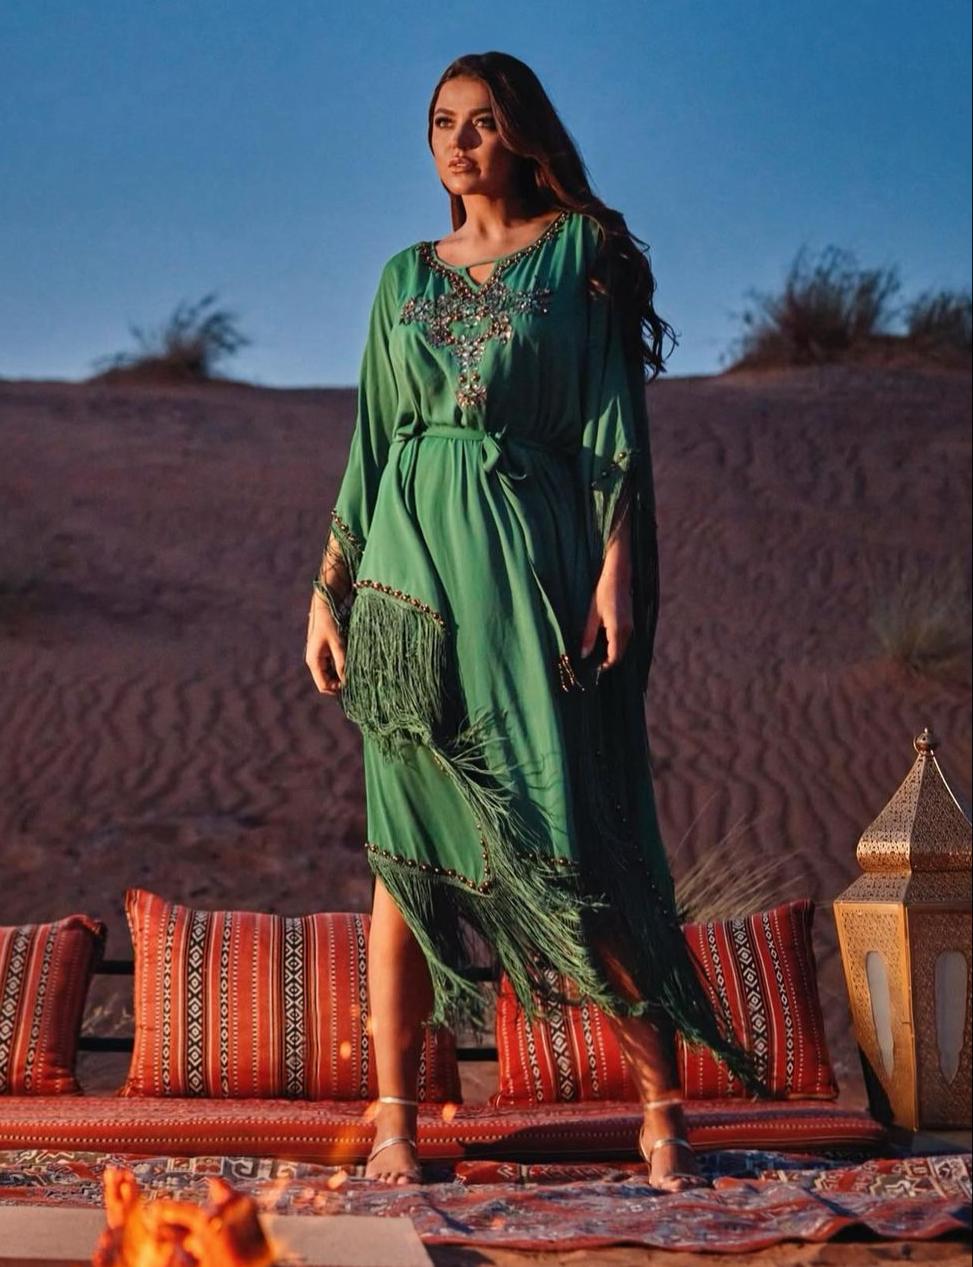  لين أبو شعر بالفستان الأخضر -الصورة من حسابها على الانستغرام